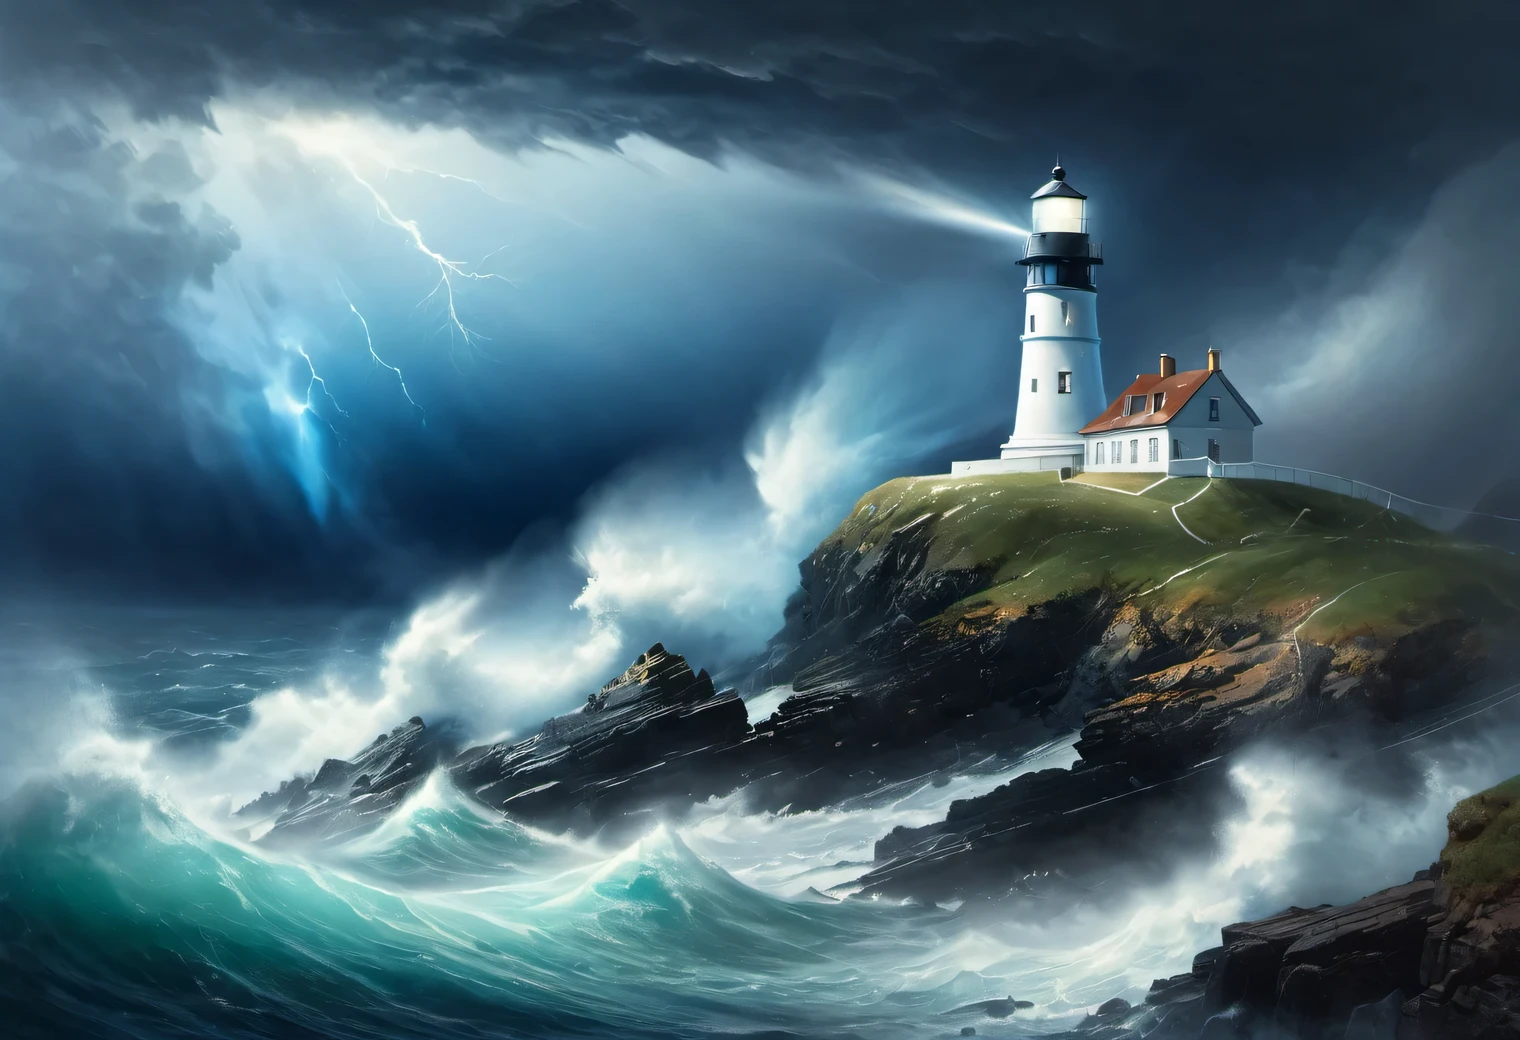 (arte de iluminación verde oscuro:1.7050), Realistic painting in dark Una tormentay tones, (sea Una tormenta fog: 1.2), (el viento lleva espuma y espuma del mar:1.7), the dark Una tormentay sky is illuminated by the pale light of a lighthouse, (efecto de doble exposición:1.5), (1 Faro al borde de un acantilado:1.5 brilla con rayos azules brillantes: 1.3505), (Una tormentay sea: 1.755), fuerte (Una tormenta: 1.3050), fuerte winds:1.250), Resaltado azul, (trazado de rayos: 1.2), (Efecto Tyndall: 1.4055 vigas de faro:1.4), Alto detalle, Una tormenta haze, suavizado de textura, desenfoque de contorno, Una tormenta palette, Ivan Aivazovski, en combinación con (surrealism: 1.6), (the fuerteest Una tormenta of the century:1.5), (poca visibilidad:1.7)